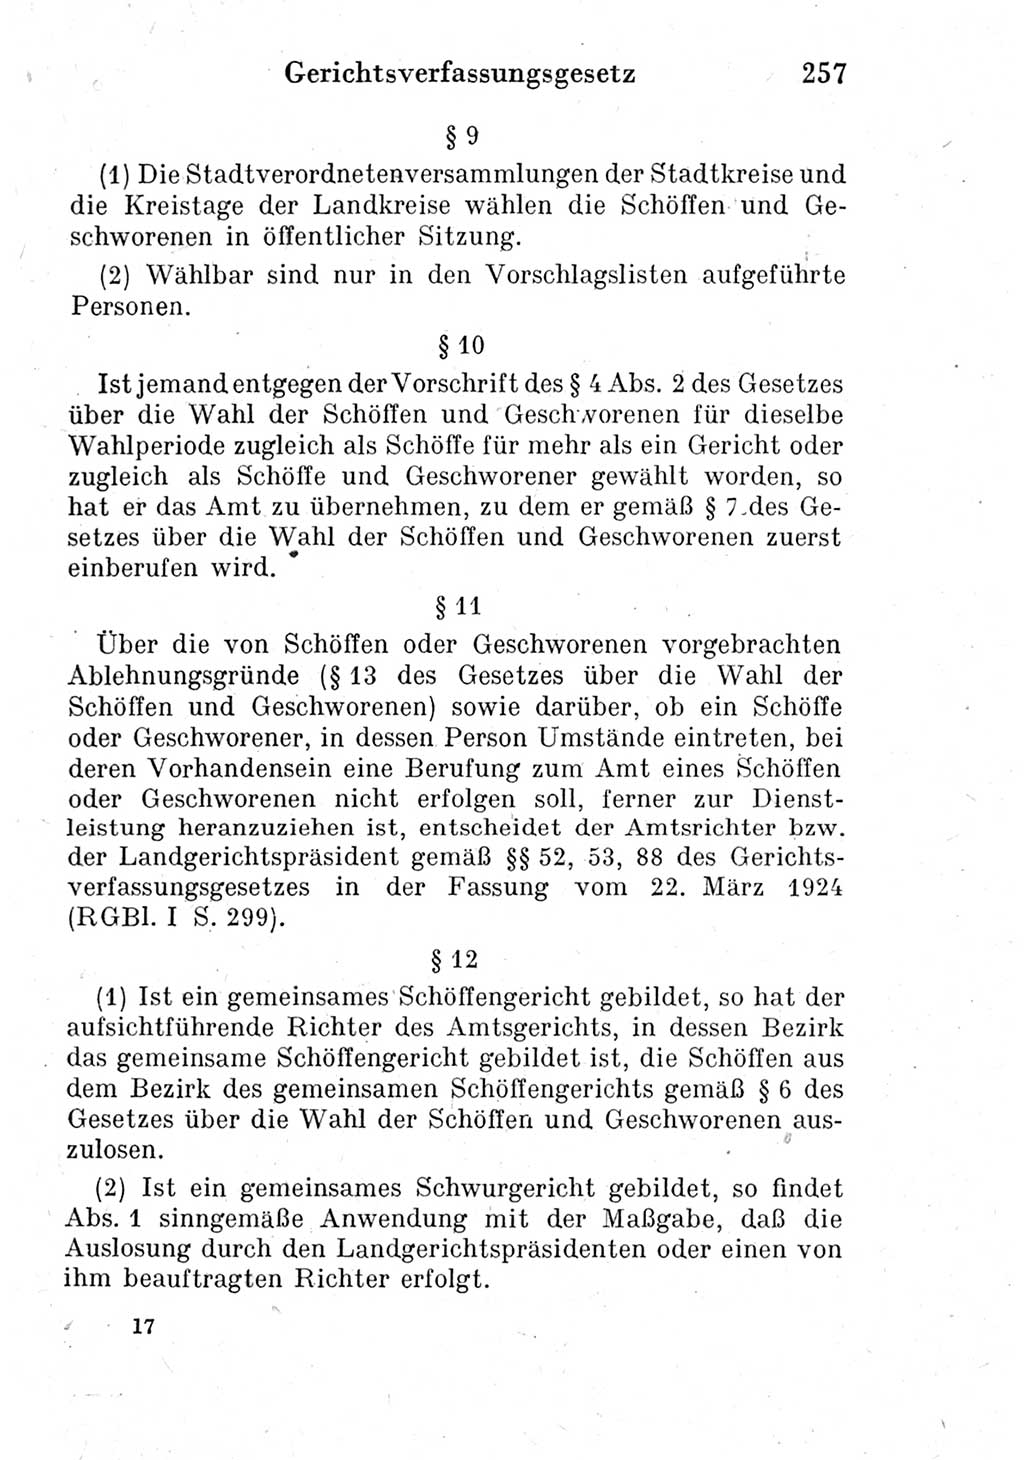 Strafprozeßordnung (StPO), Gerichtsverfassungsgesetz (GVG) und zahlreiche Nebengesetze der Deutschen Demokratischen Republik (DDR) 1950, Seite 257 (StPO GVG Ges. DDR 1950, S. 257)